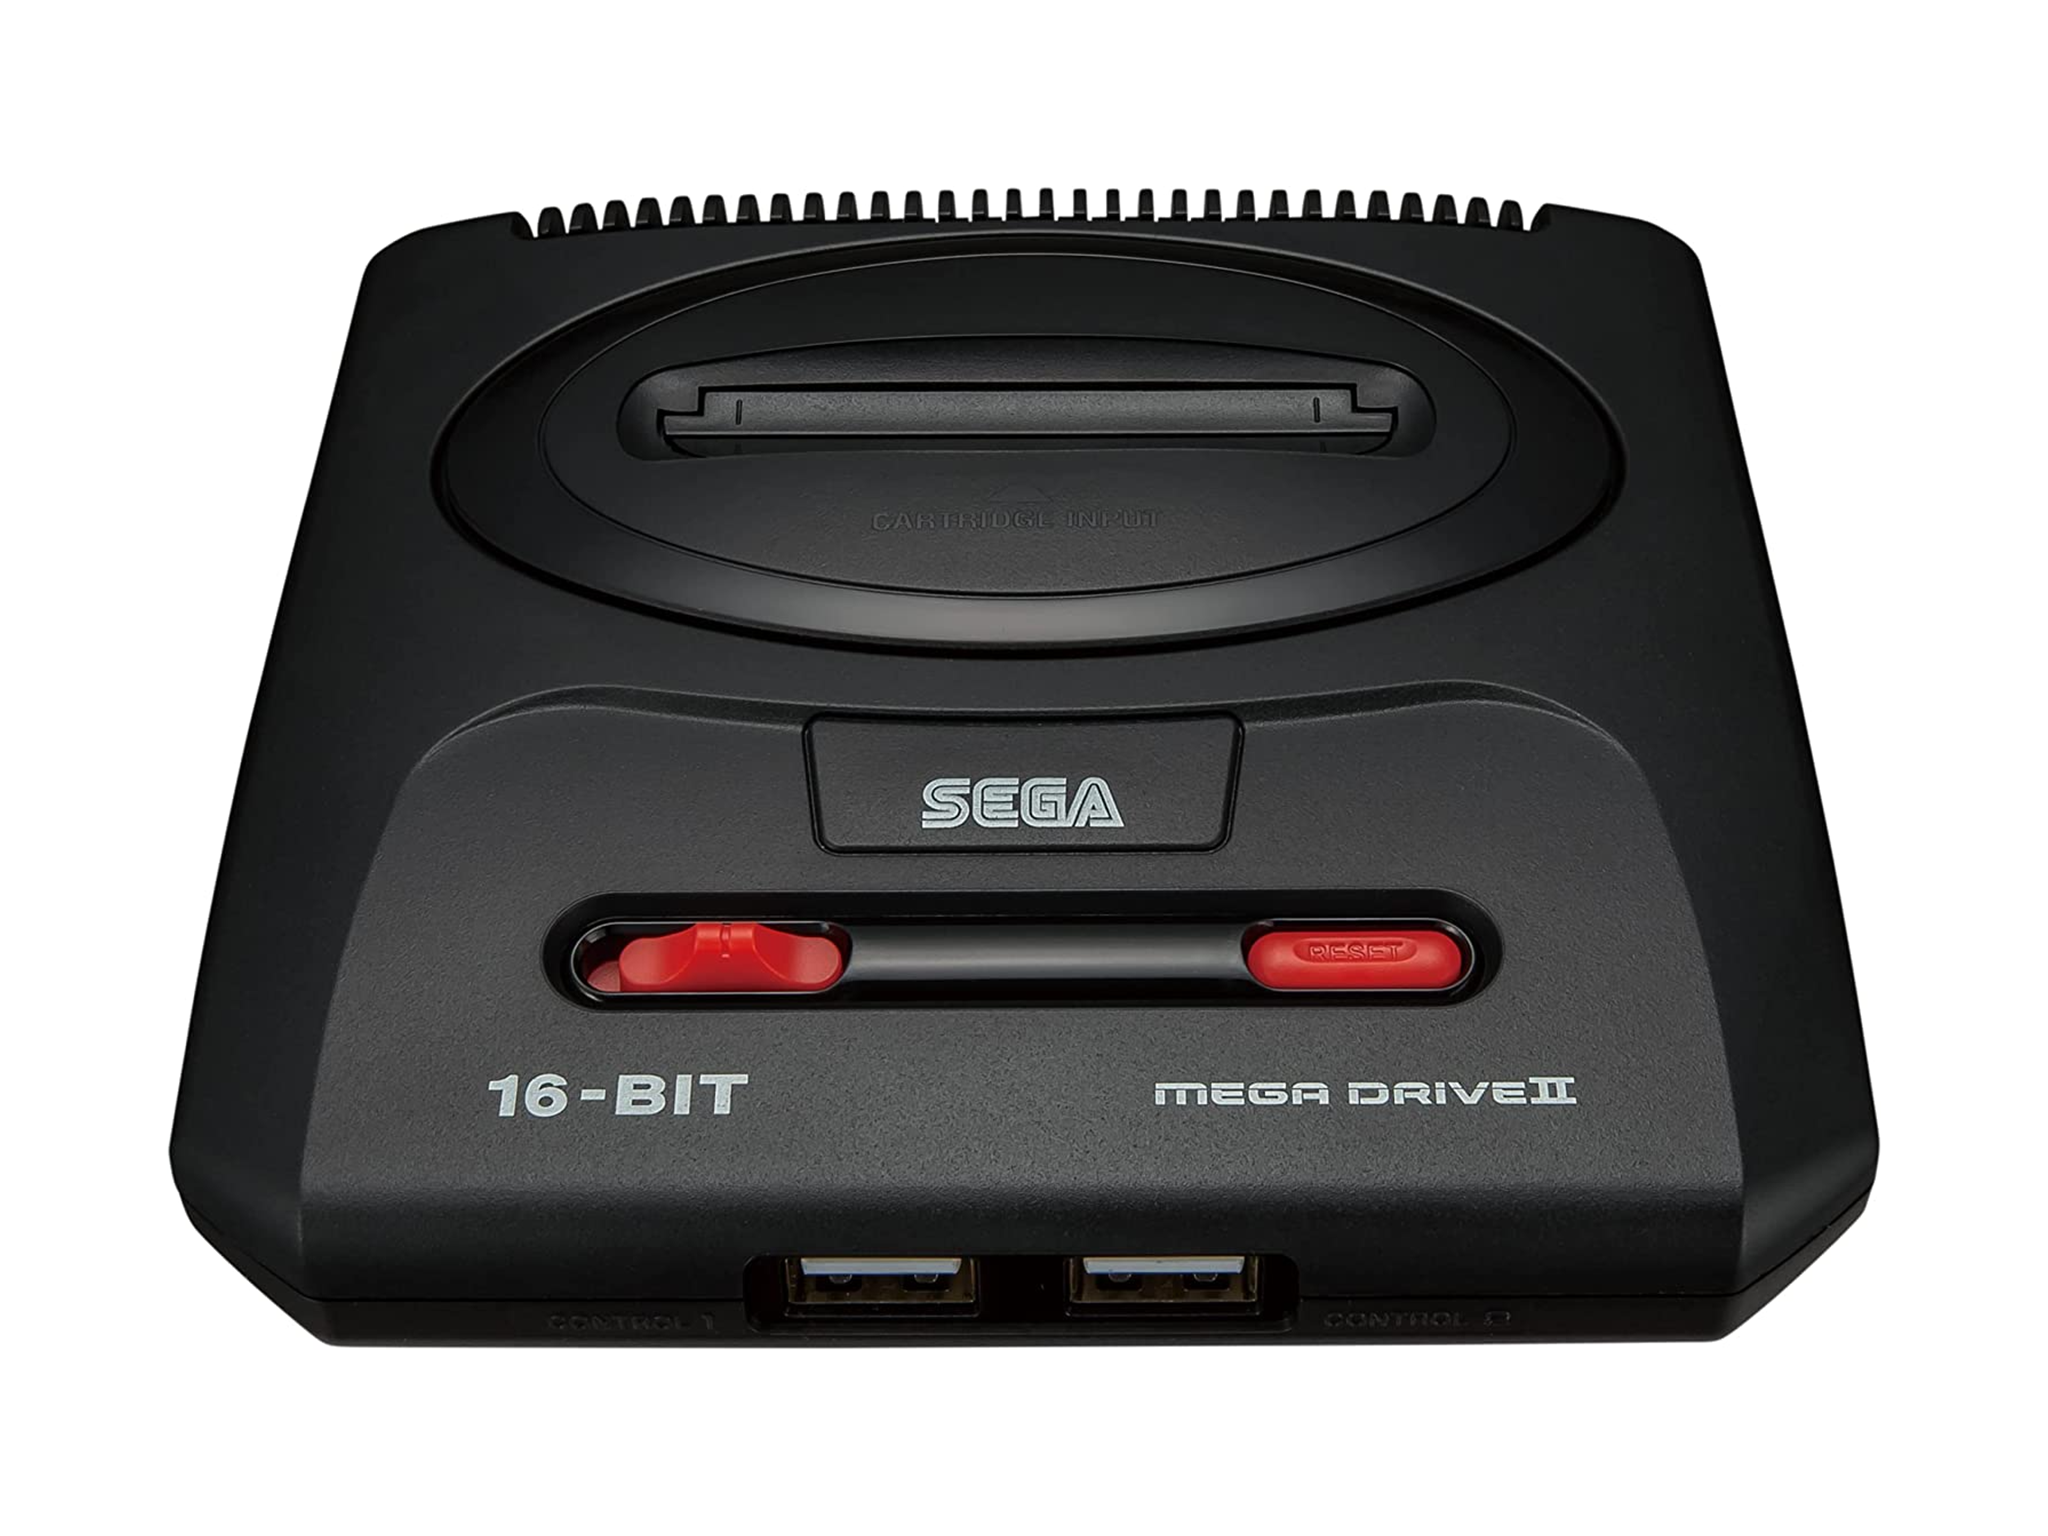 Sega Mega Drive mini 2: Pre-orders and price in the UK